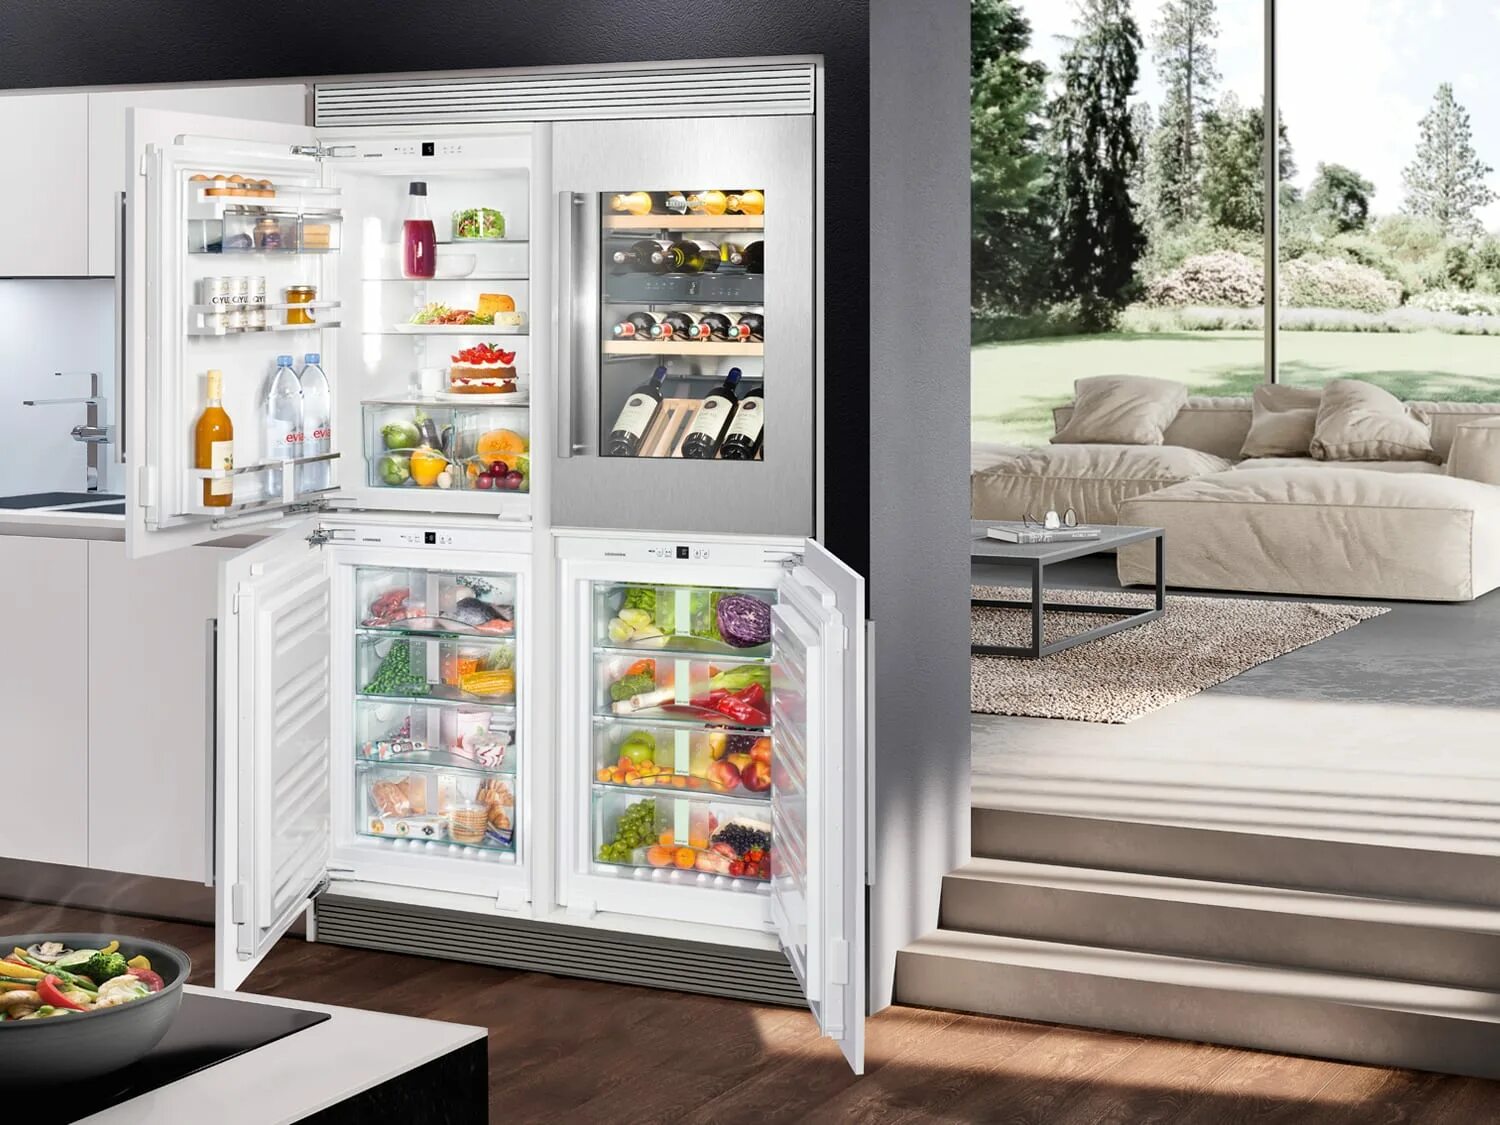 Холодильник Либхер двухдверный. Холодильник Liebherr Side by Side. Холодильник Либхер с винным шкафом. Встраиваемый холодильник Liebherr с зоной свежести. Холодильники новые модели